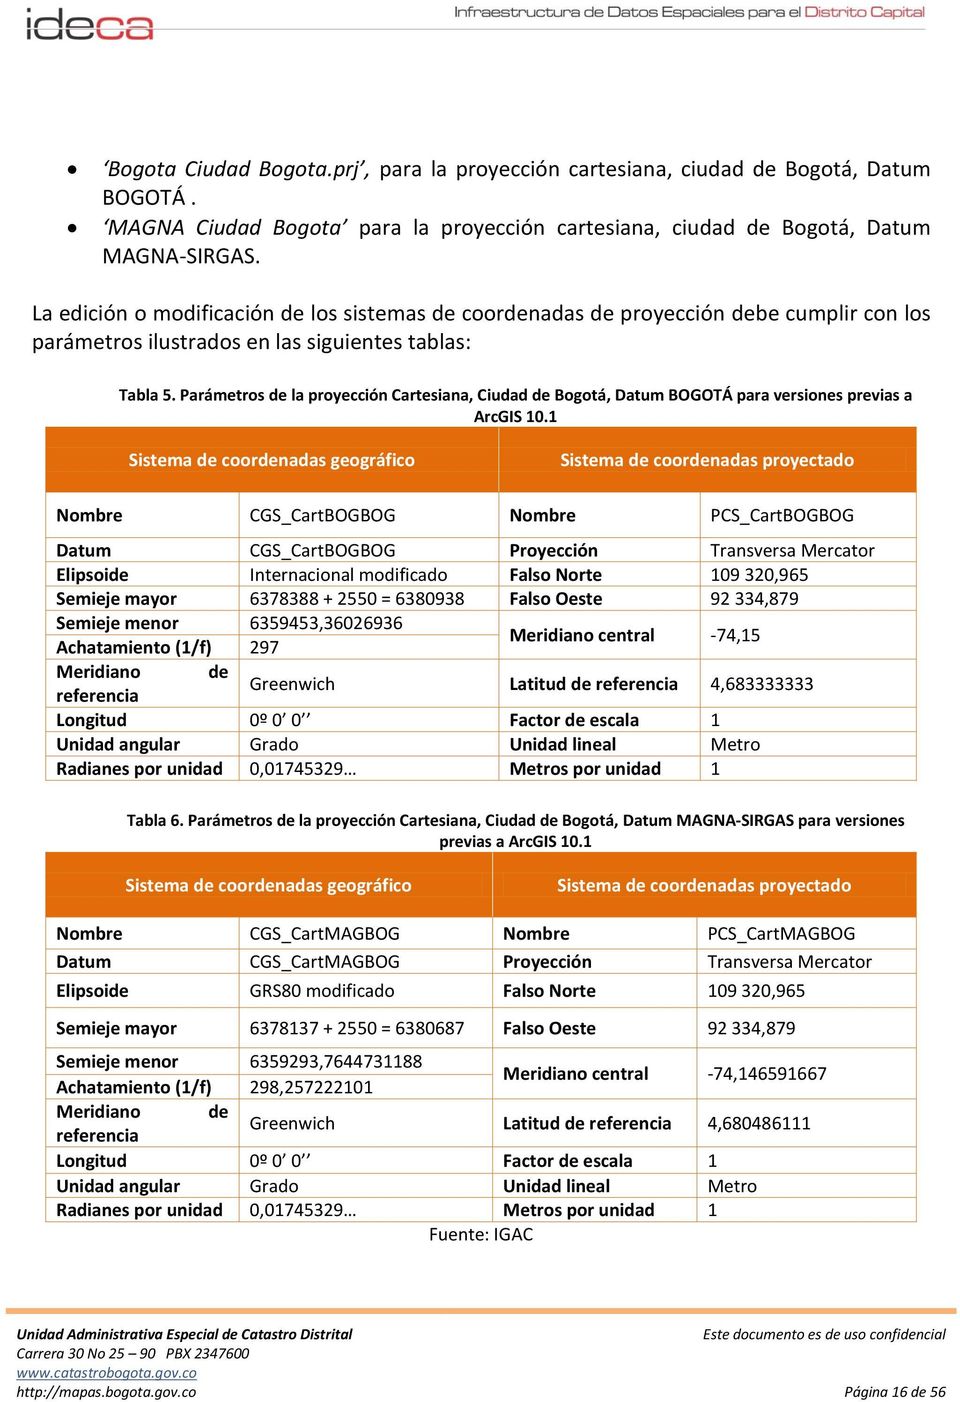 Parámetros de la proyección Cartesiana, Ciudad de Bogotá, Datum BOGOTÁ para versiones previas a ArcGIS 10.